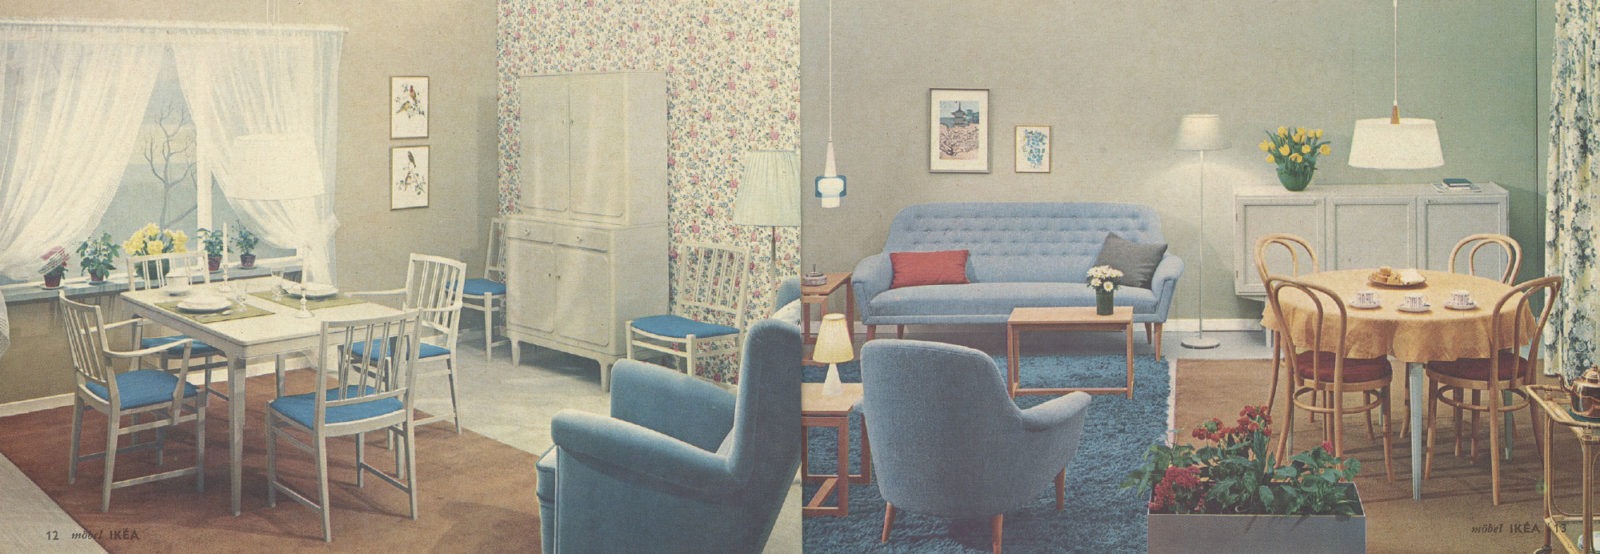 Uppslag IKEA katalog 1962 med inbjudande rumsinteriör i vita och blåa toner, med skira gardiner och blommor i fönstret.